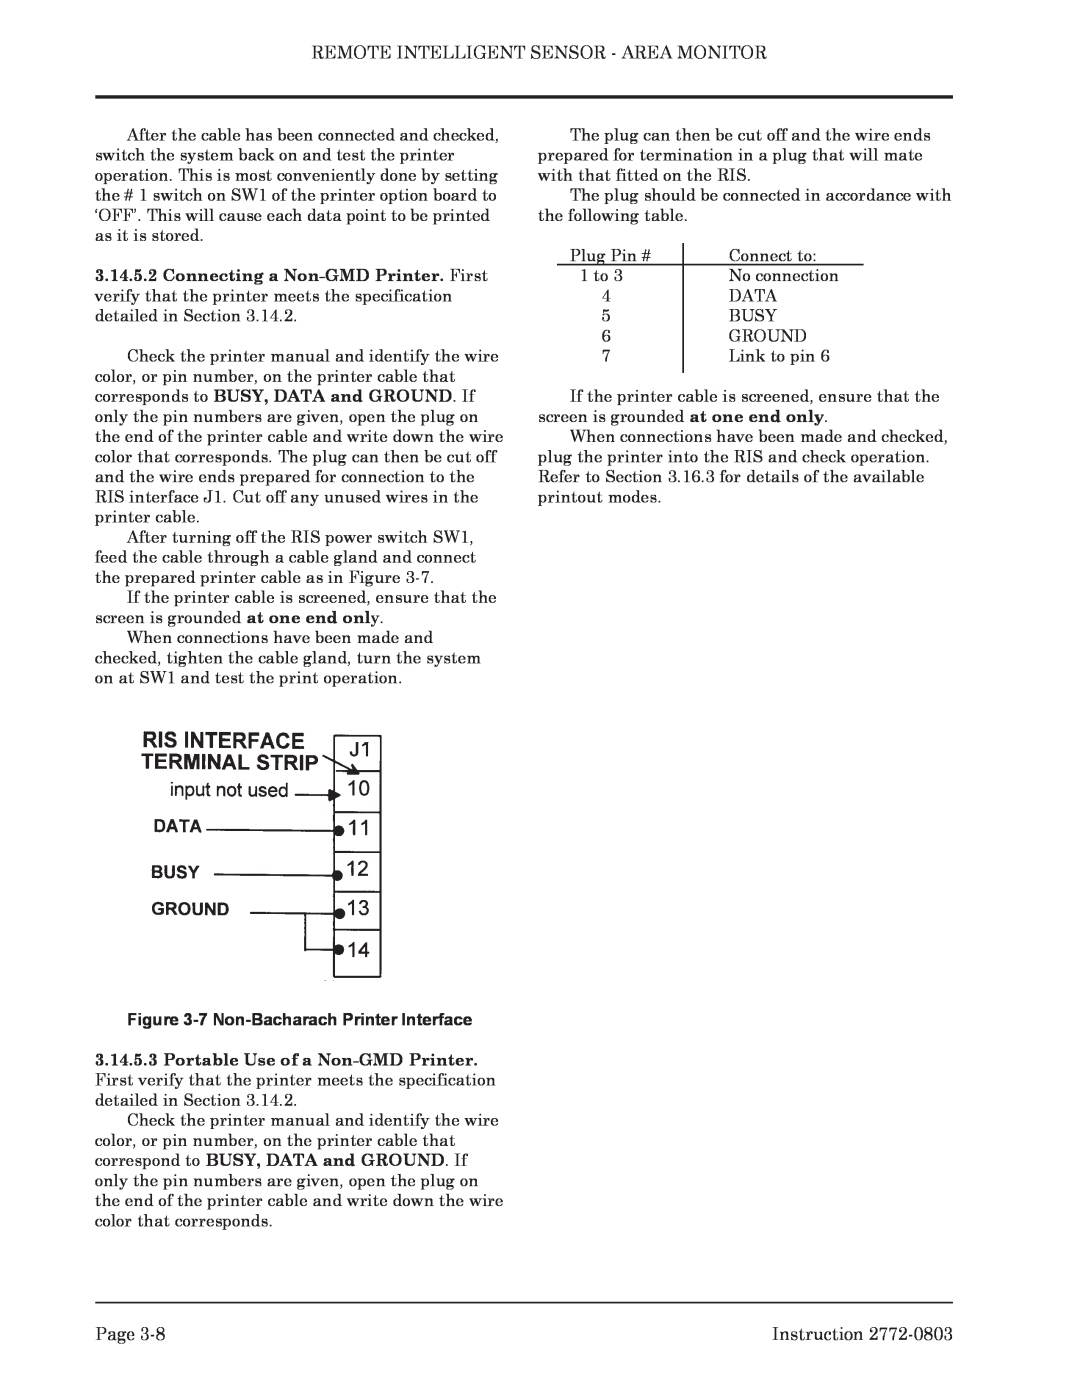 Bacharach 2772-0803 manual 7 Non-Bacharach Printer Interface 